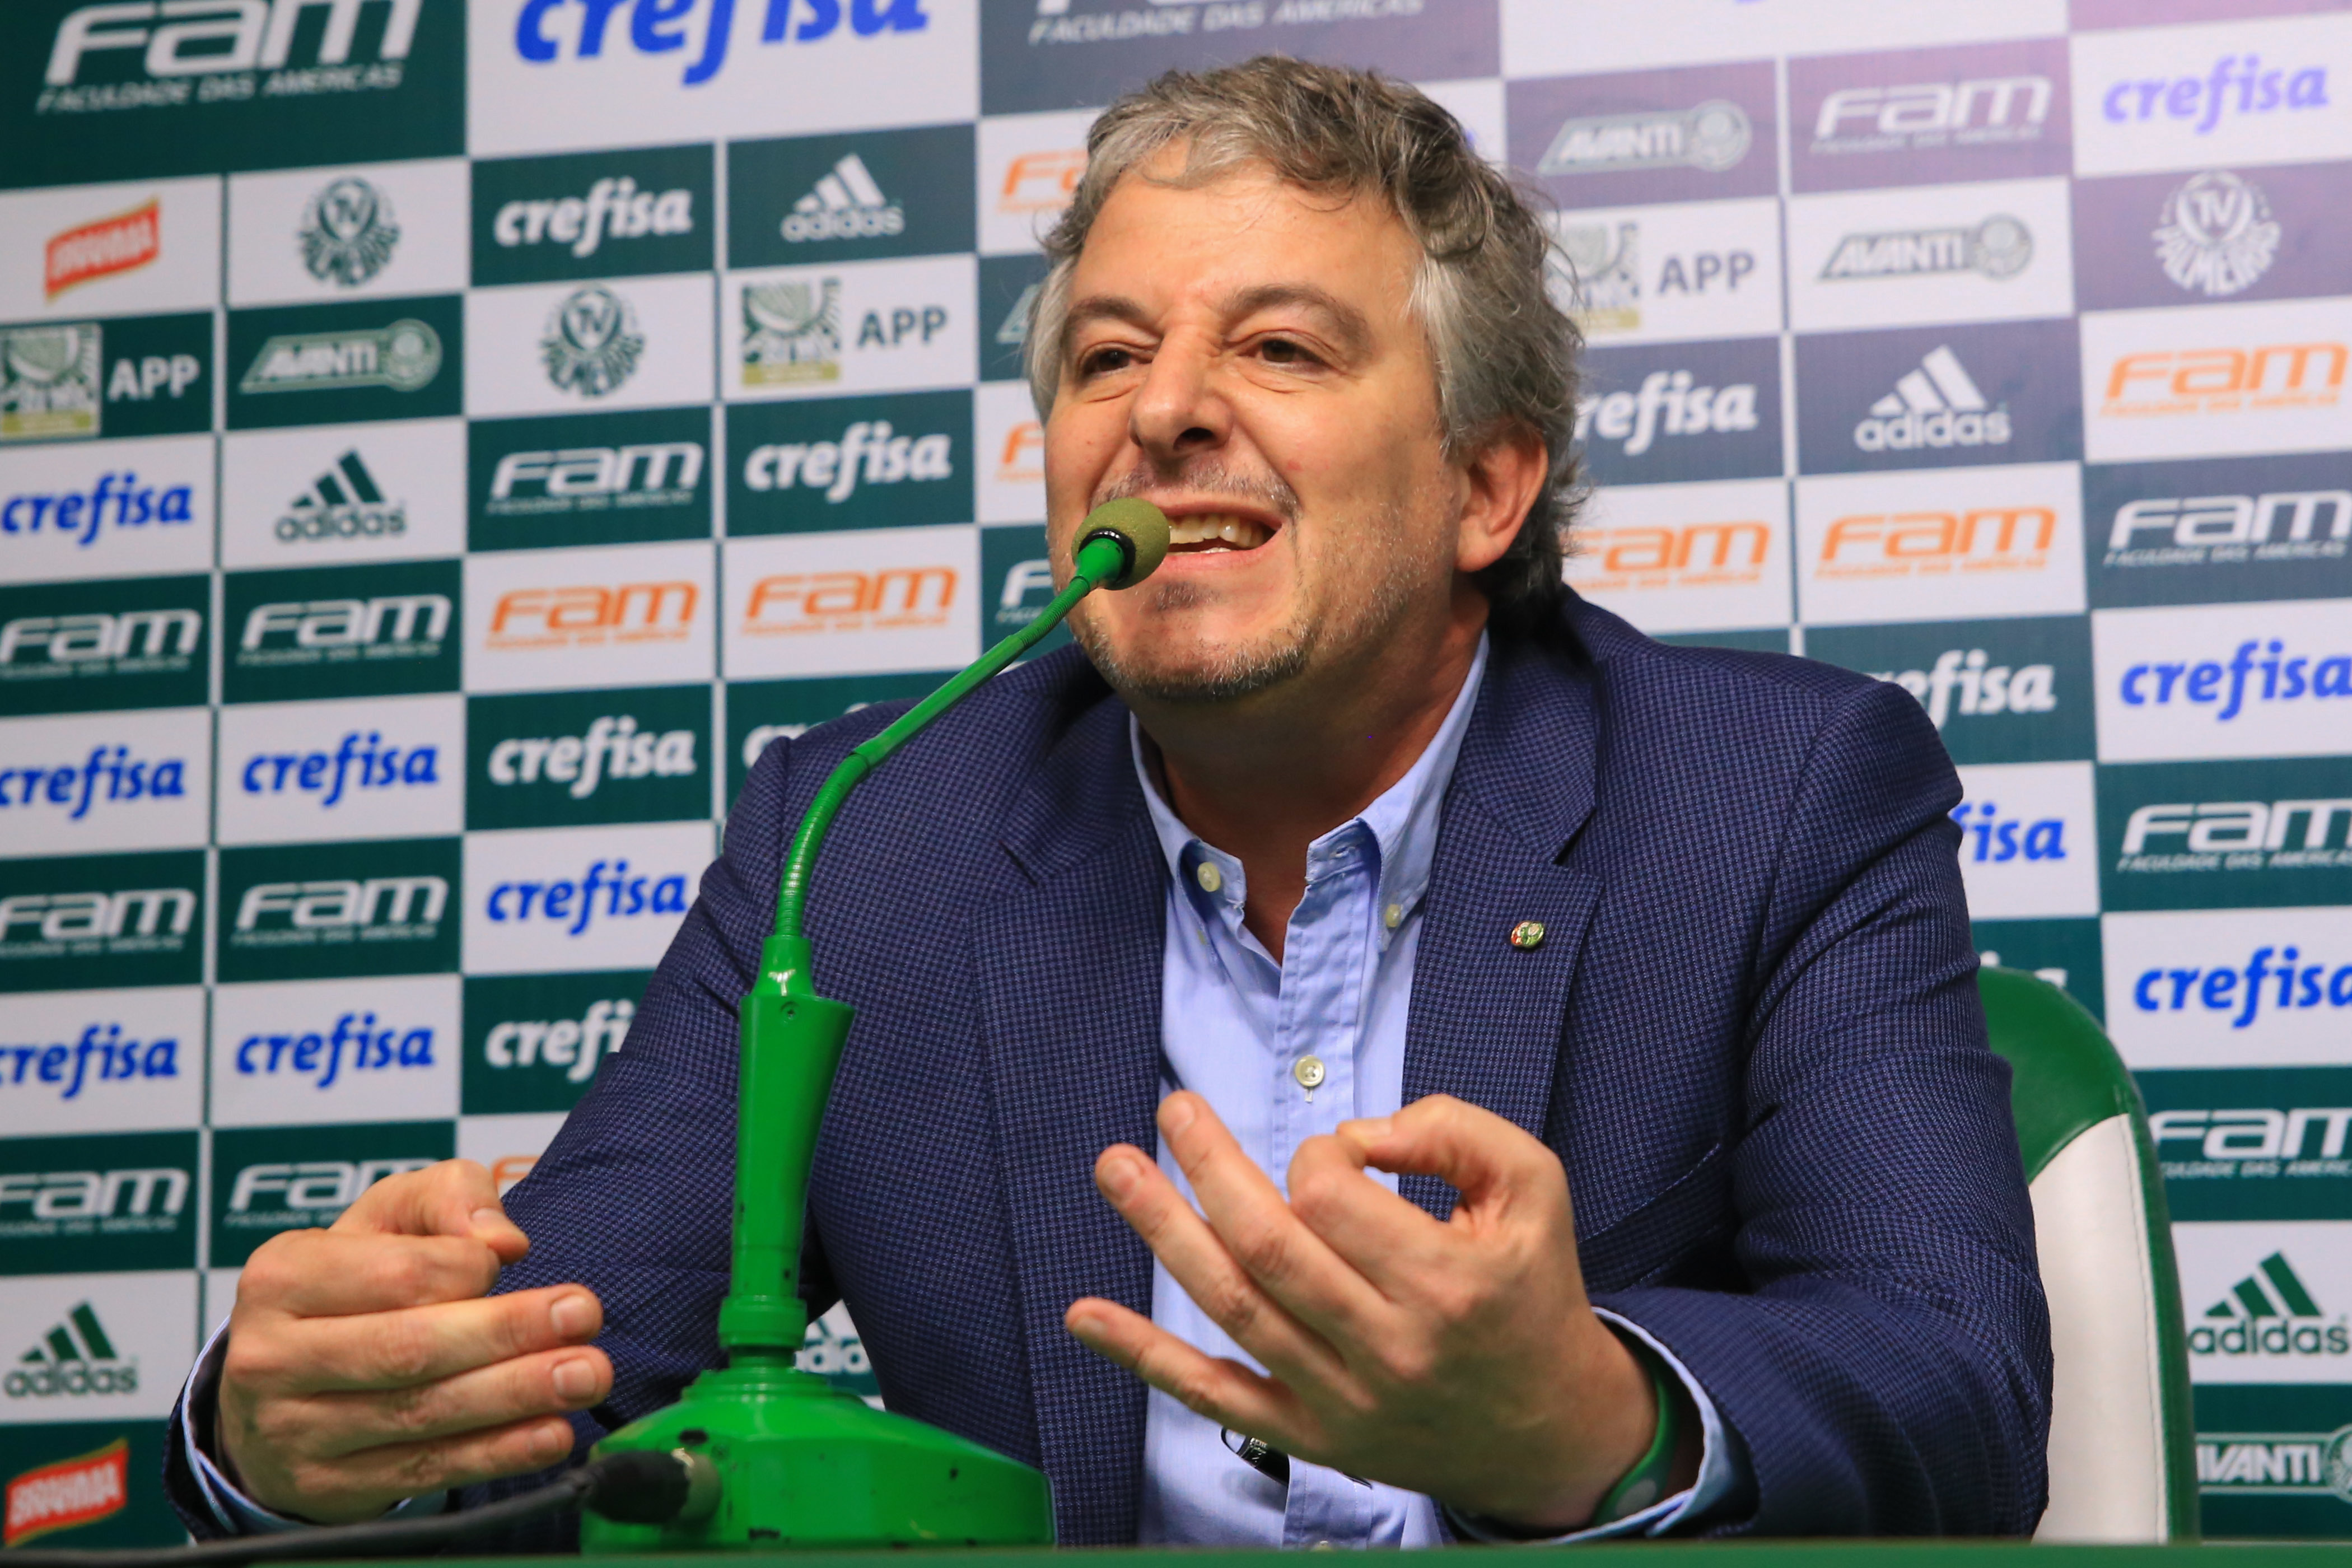 Paulo Nobre presidiu o Palmeiras entre 2013 e 2016